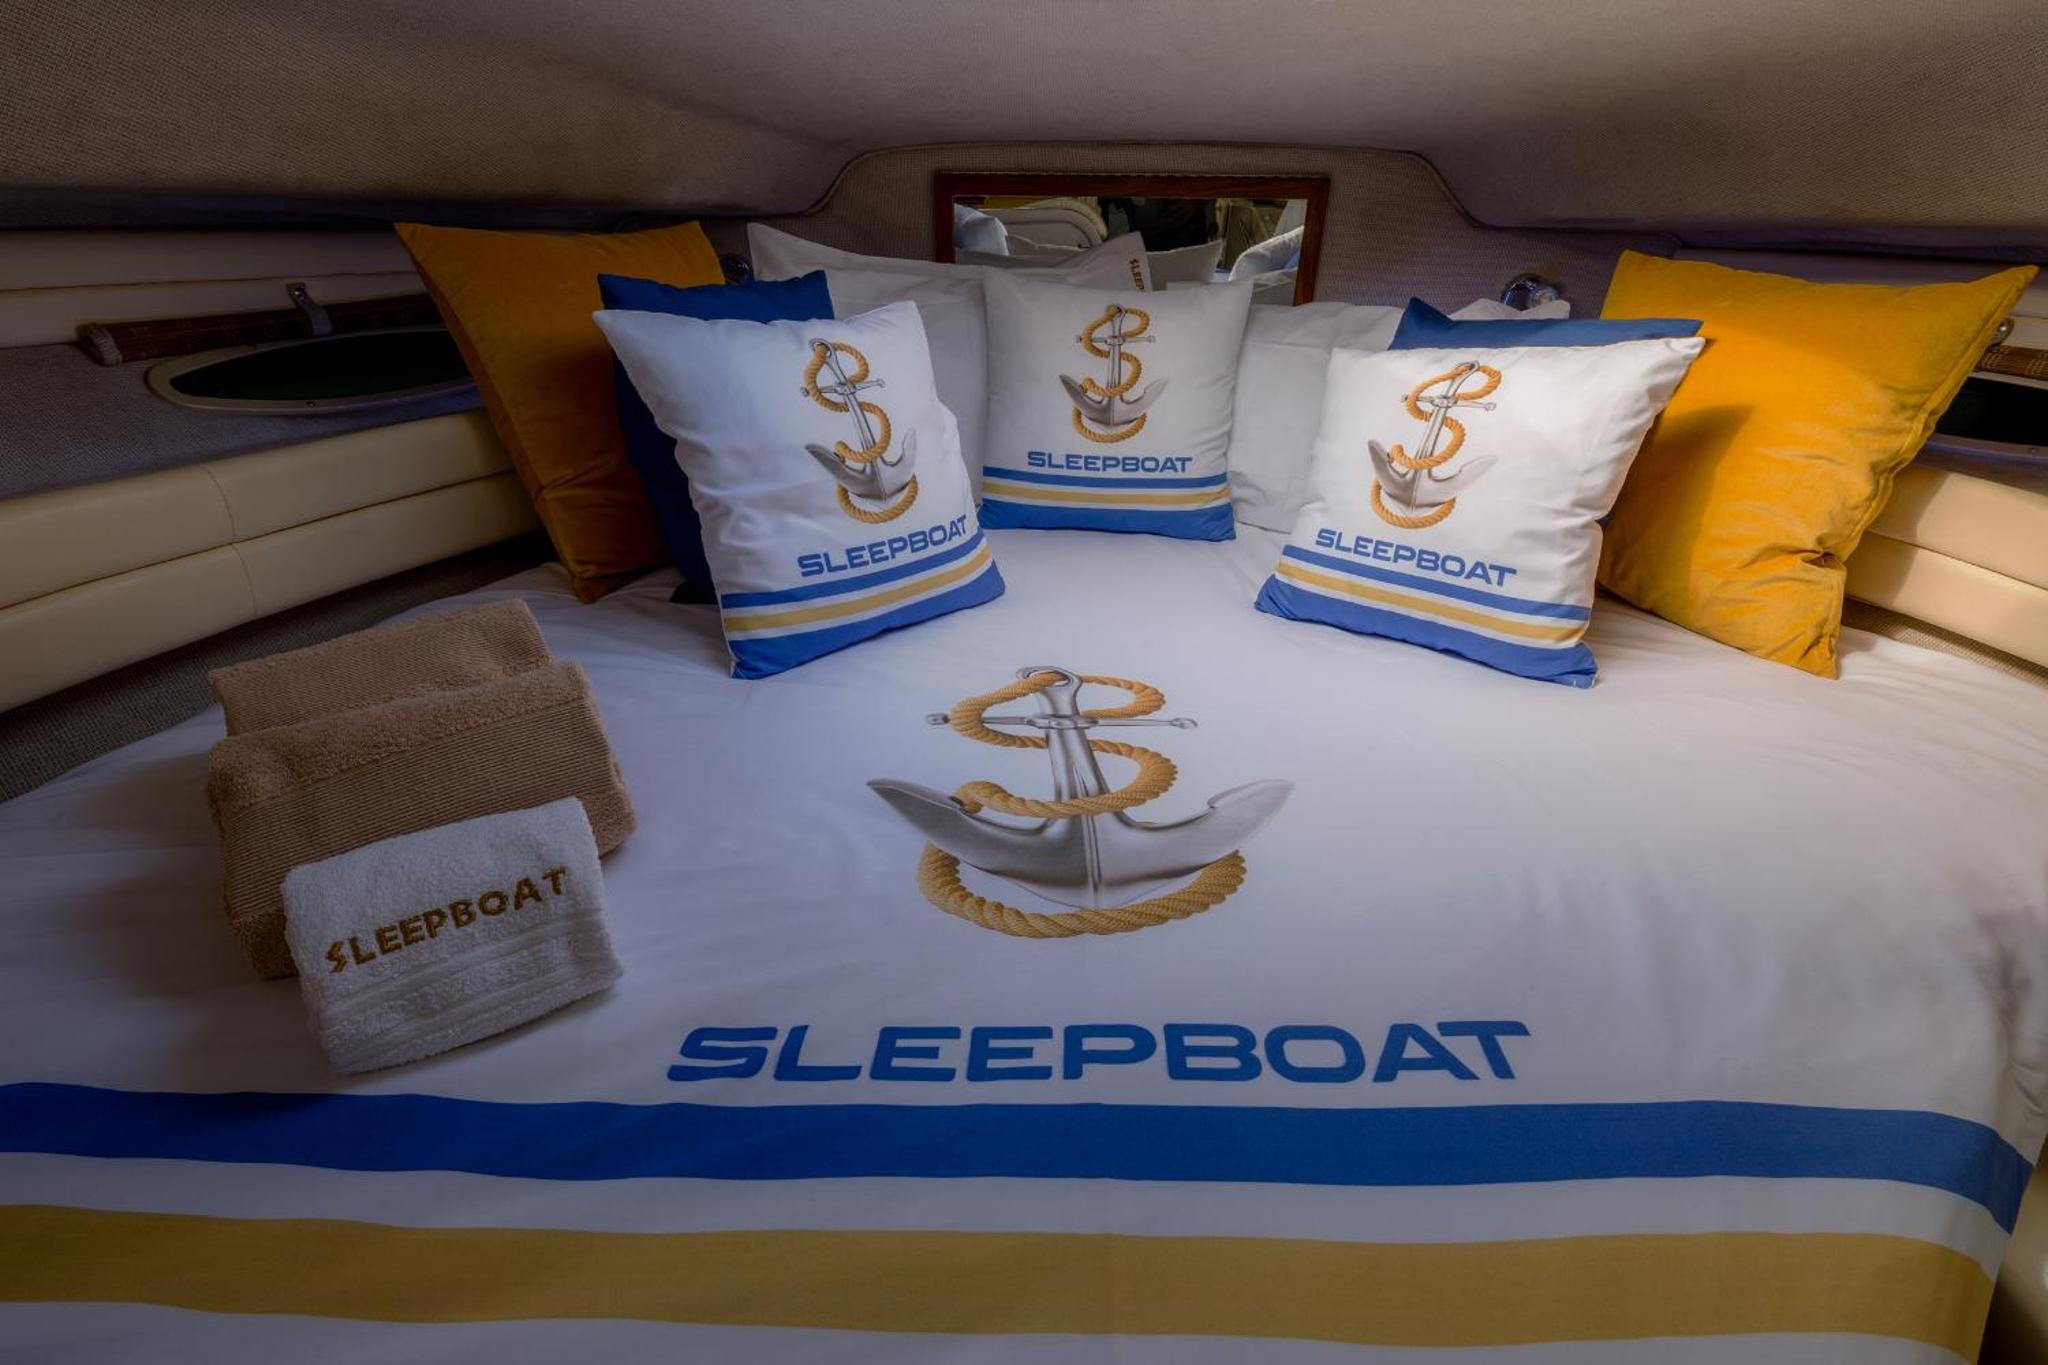 Sleep Boat